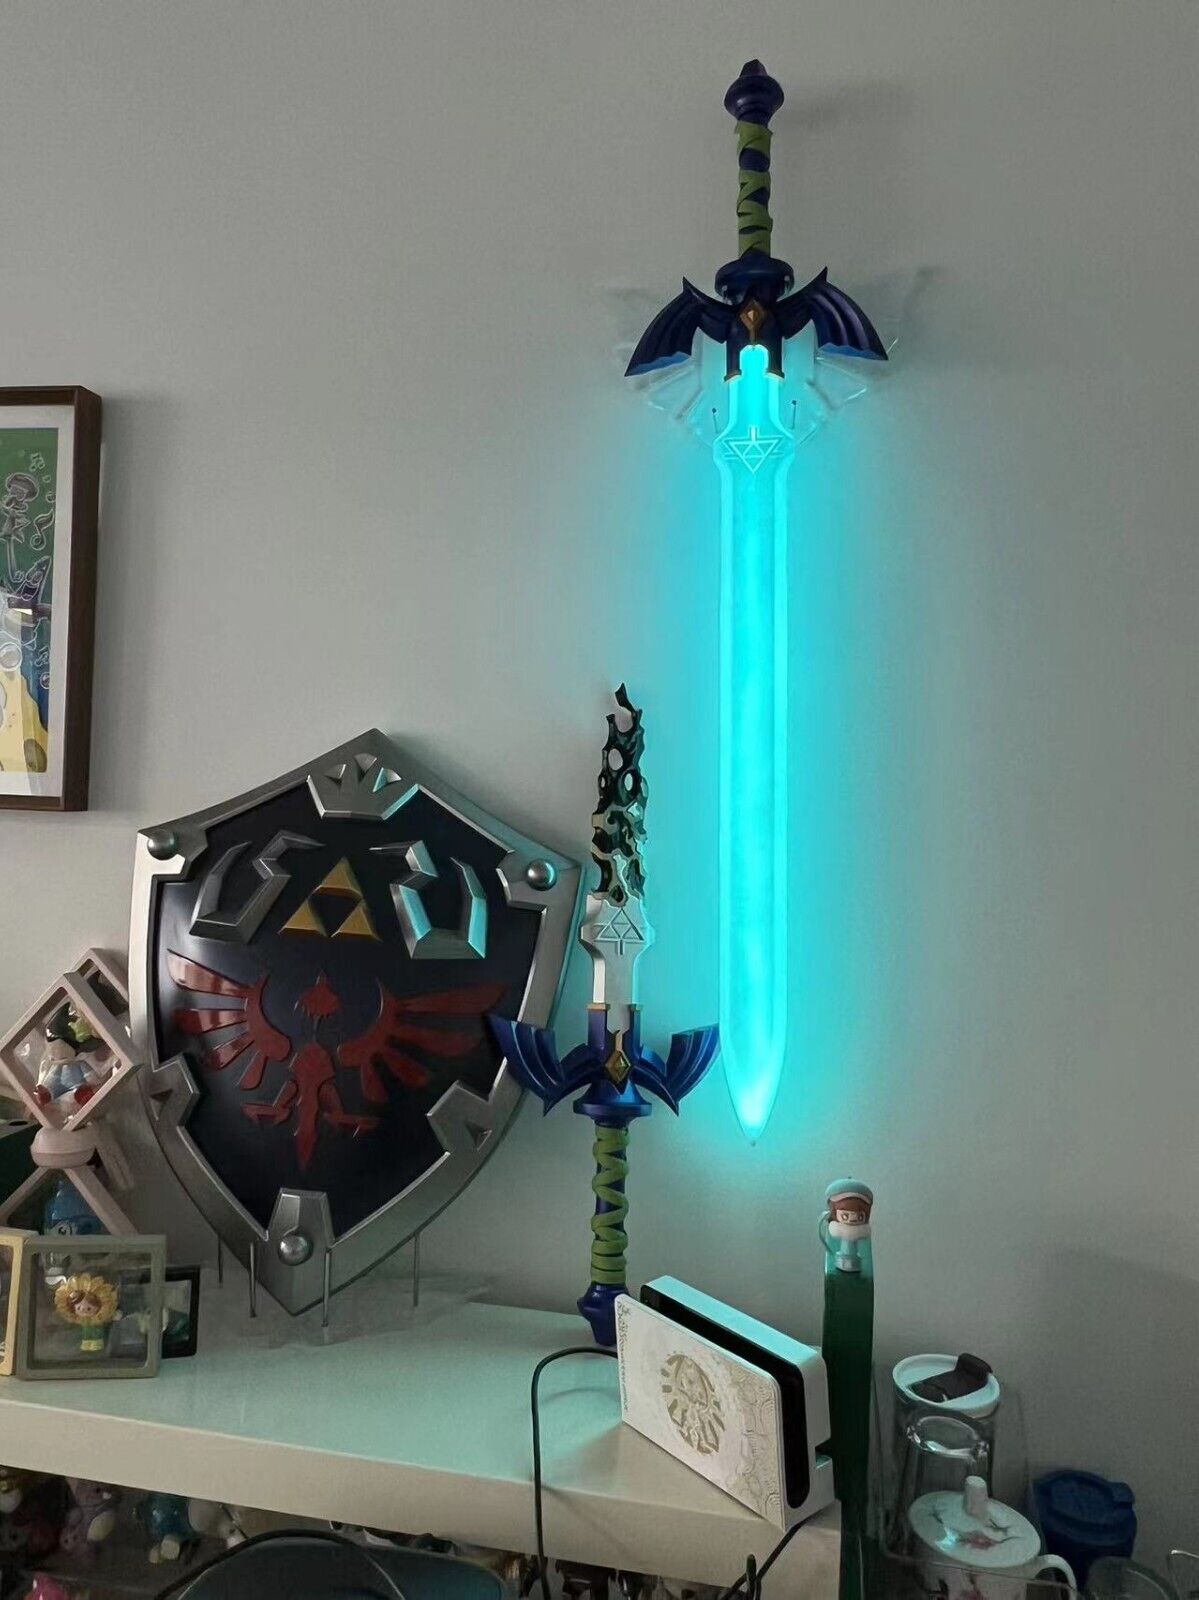 Light-up Master Sword Legend of Zelda, Master Sword LED The Legend of Zelda